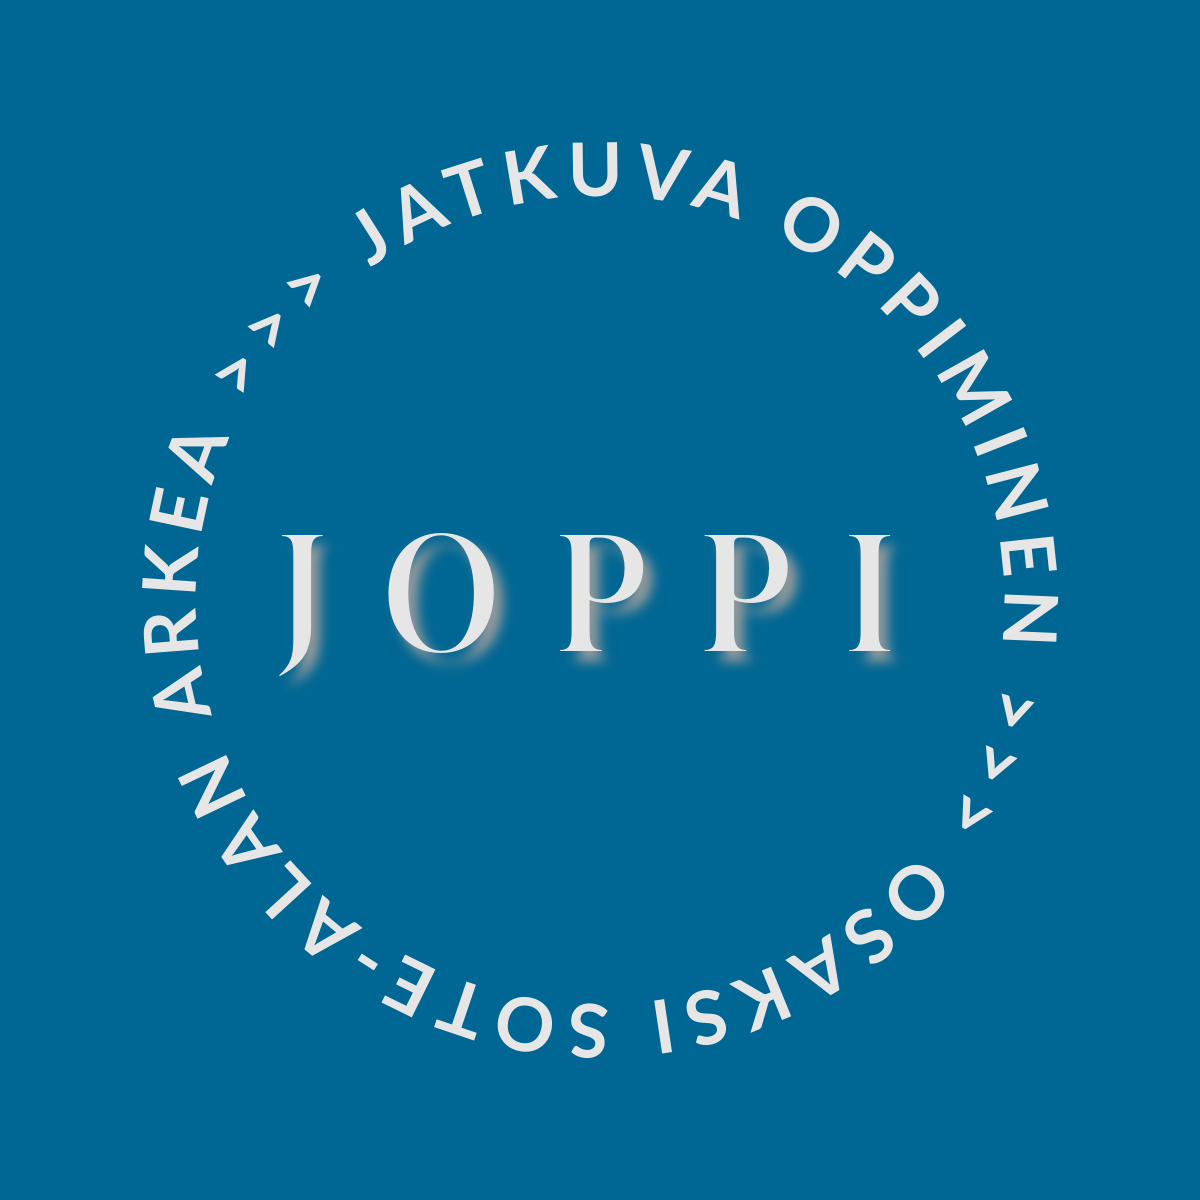 Joppi - Jatkuva oppiminen osaksi sote-alan arkea -logo.